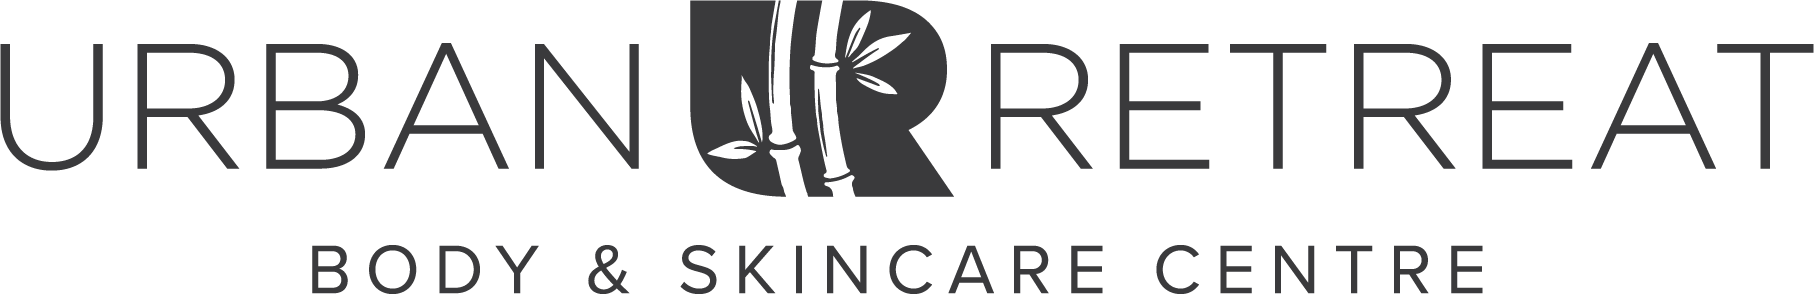 Urban Retreat Body & Skincare Centre logo